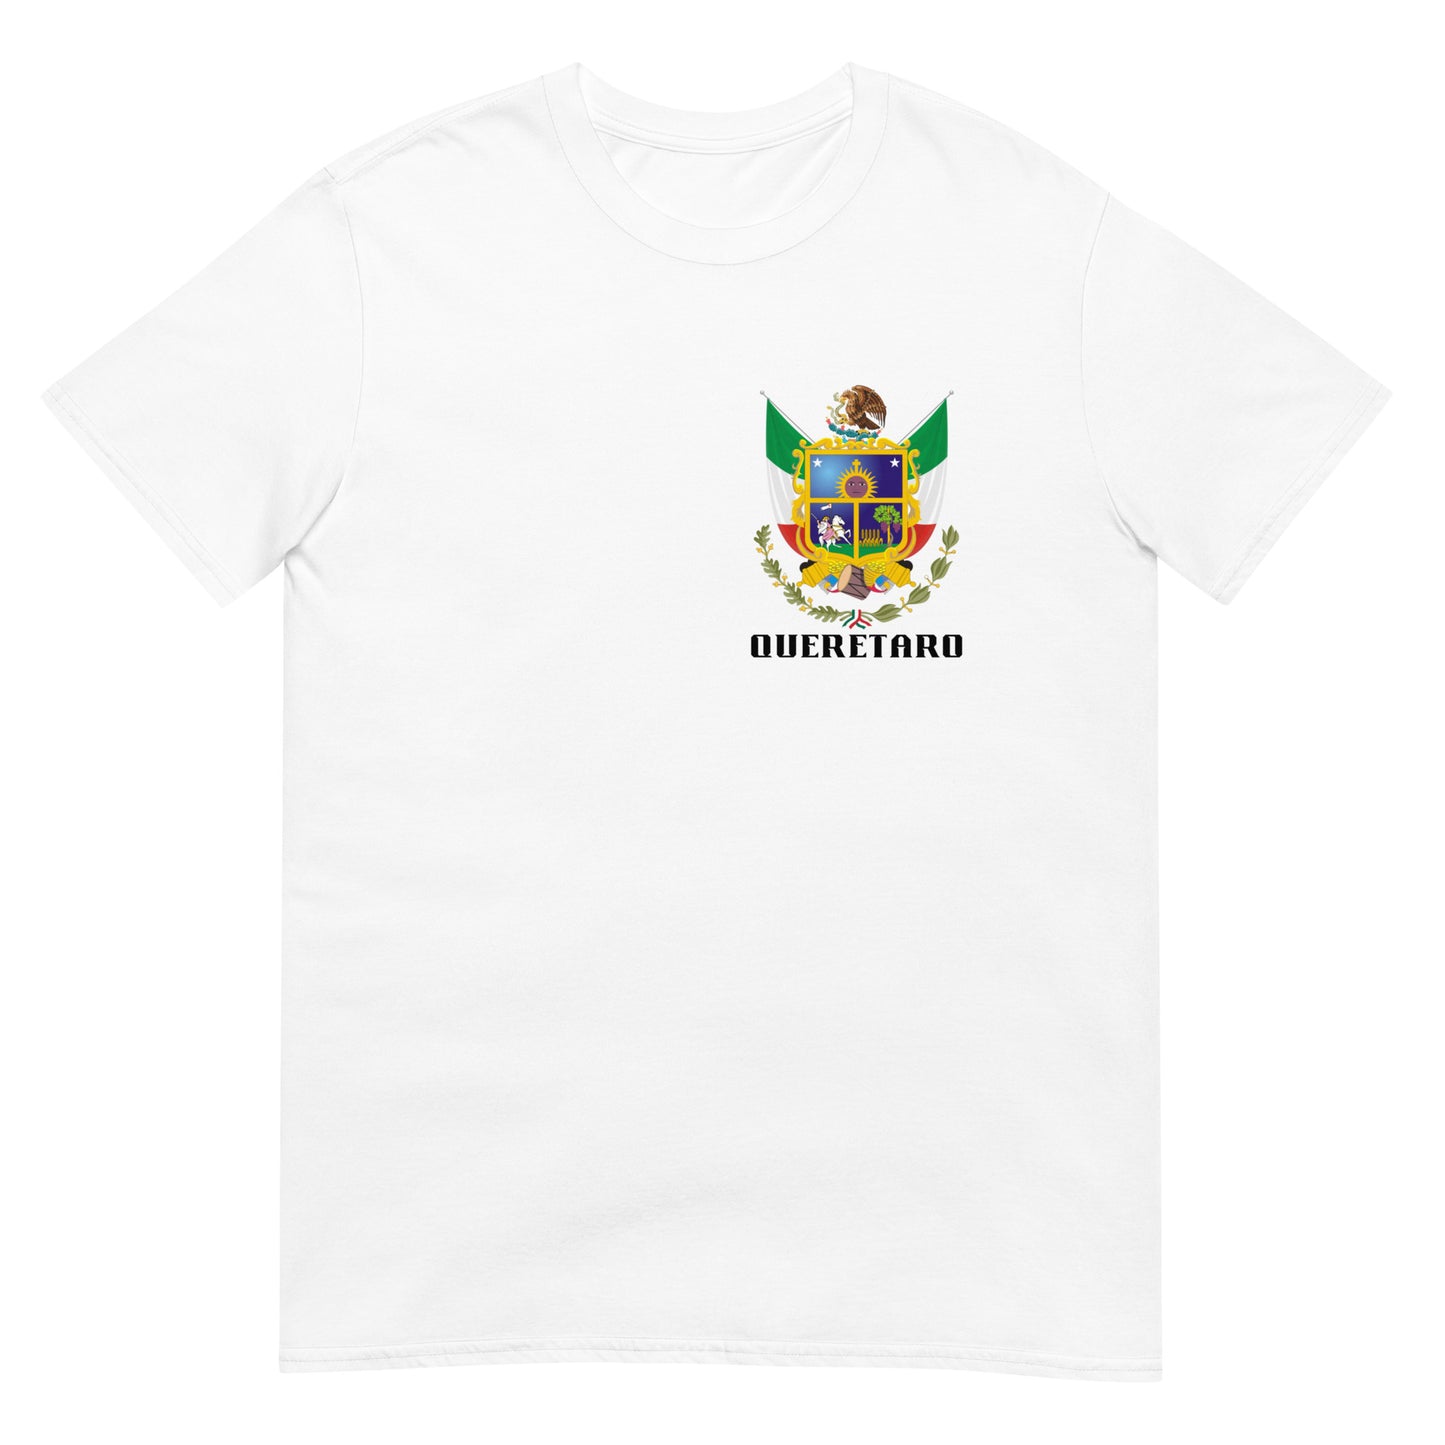 Queretaro - T-Shirt